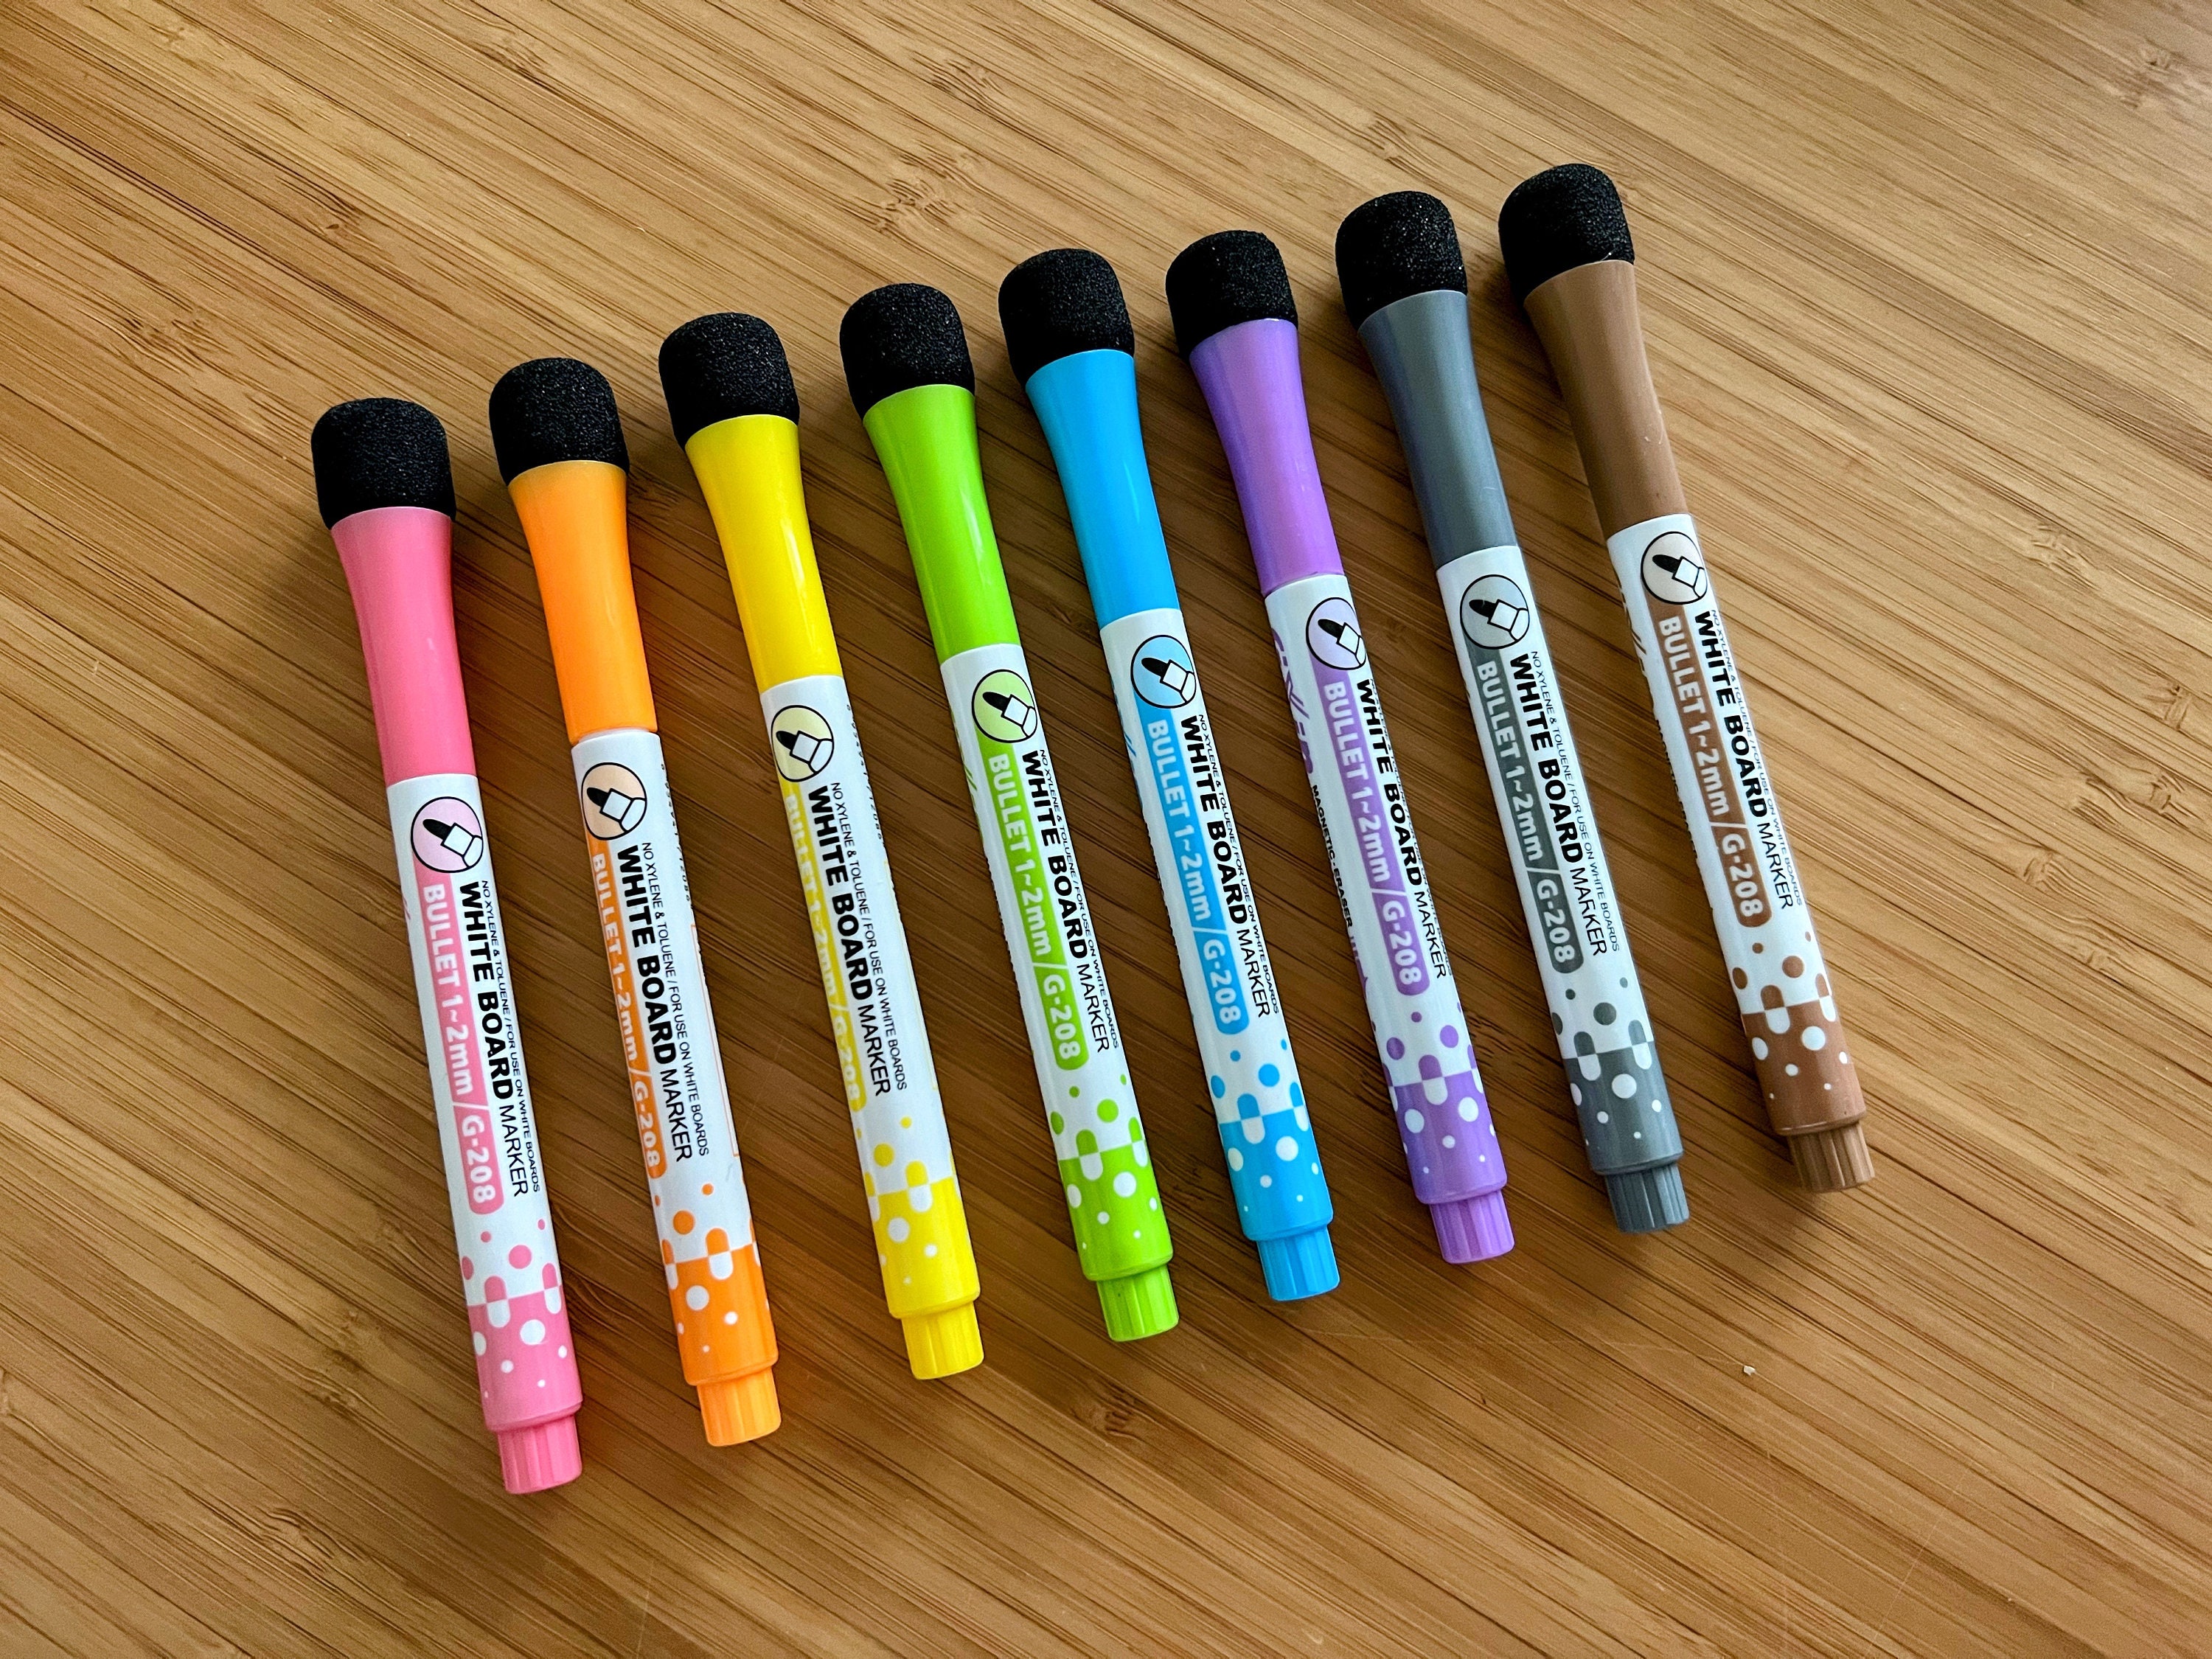 8pcs Whiteboard & Chalkboard Marker Pen, Erasable & Refillable